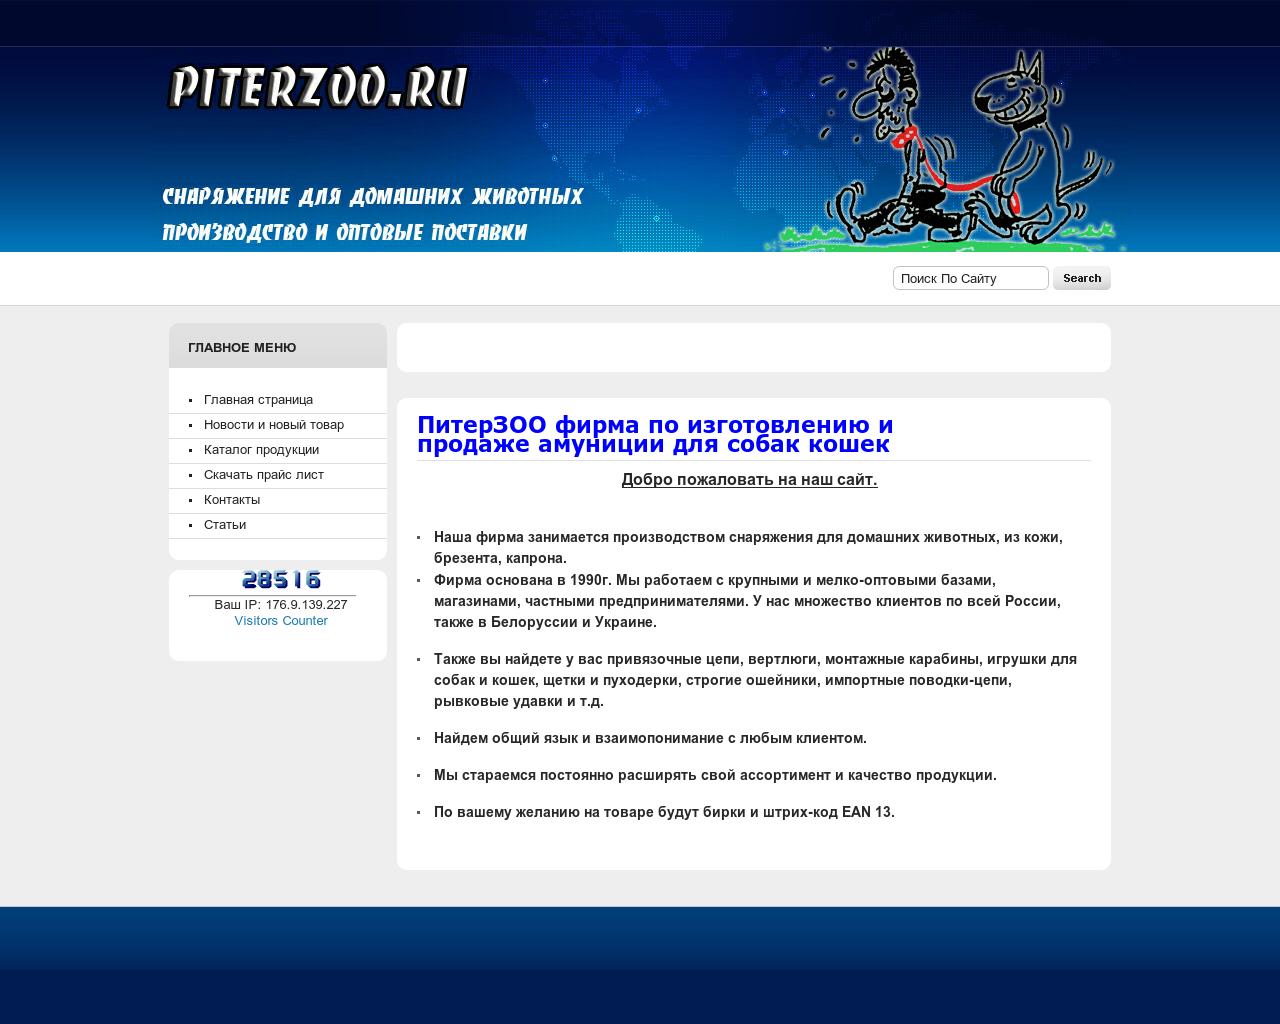 Изображение сайта piterzoo.ru в разрешении 1280x1024